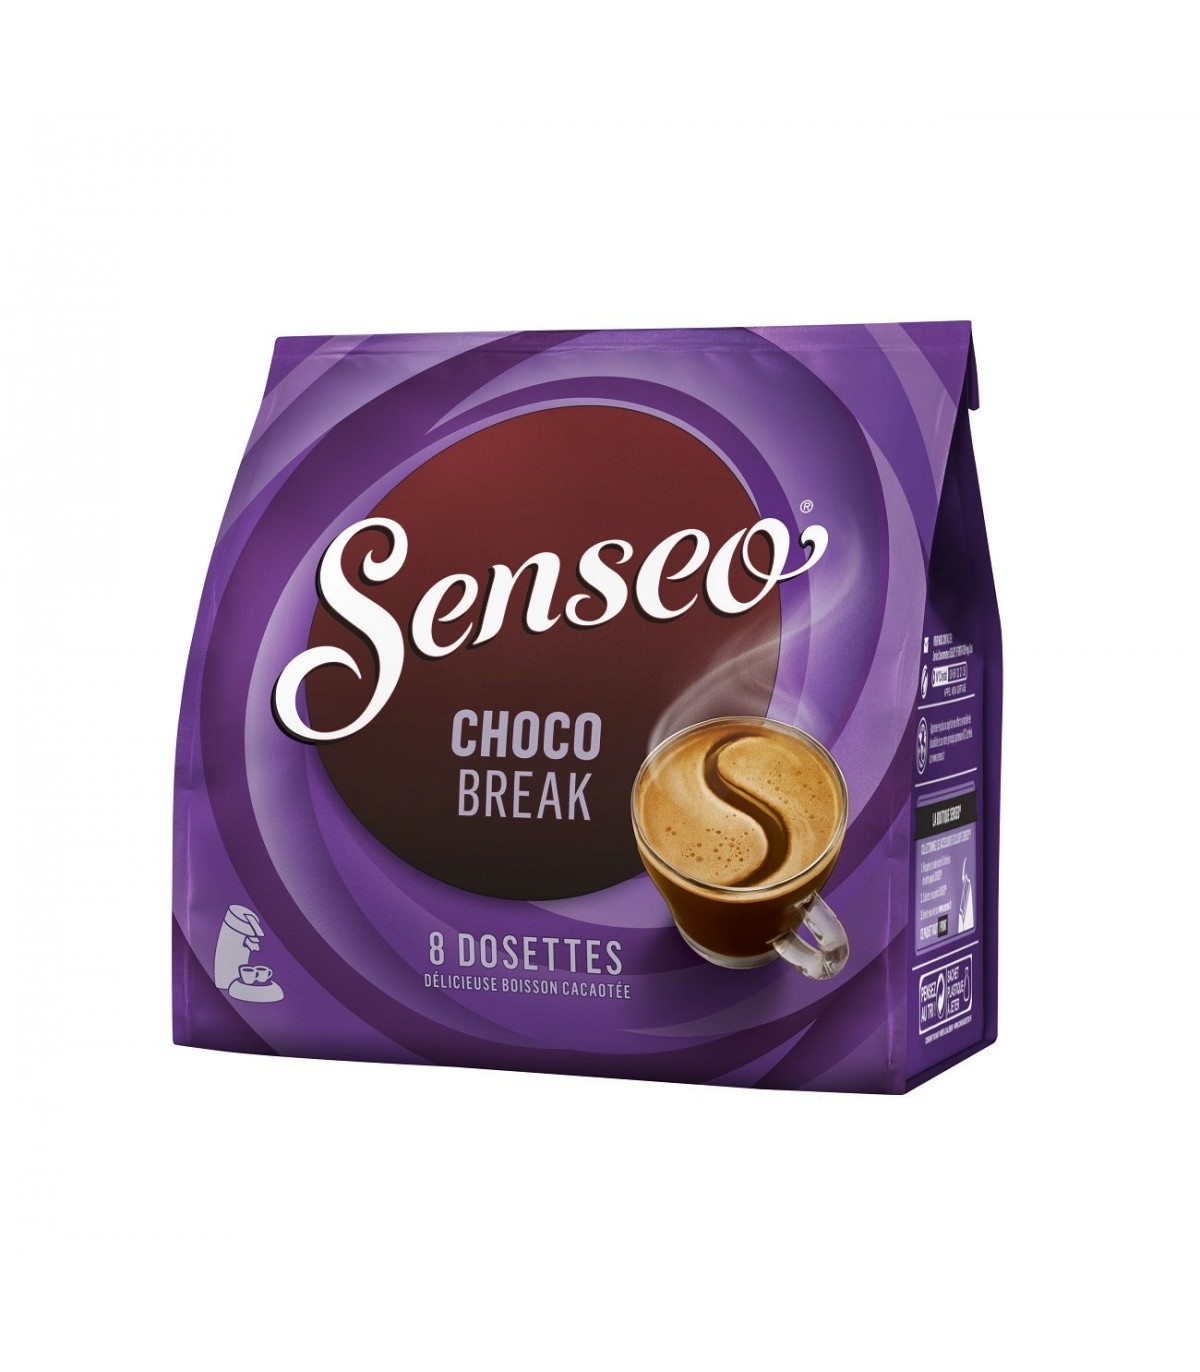 Senseo Doux - 40 Pods for Senseo for €4.79.